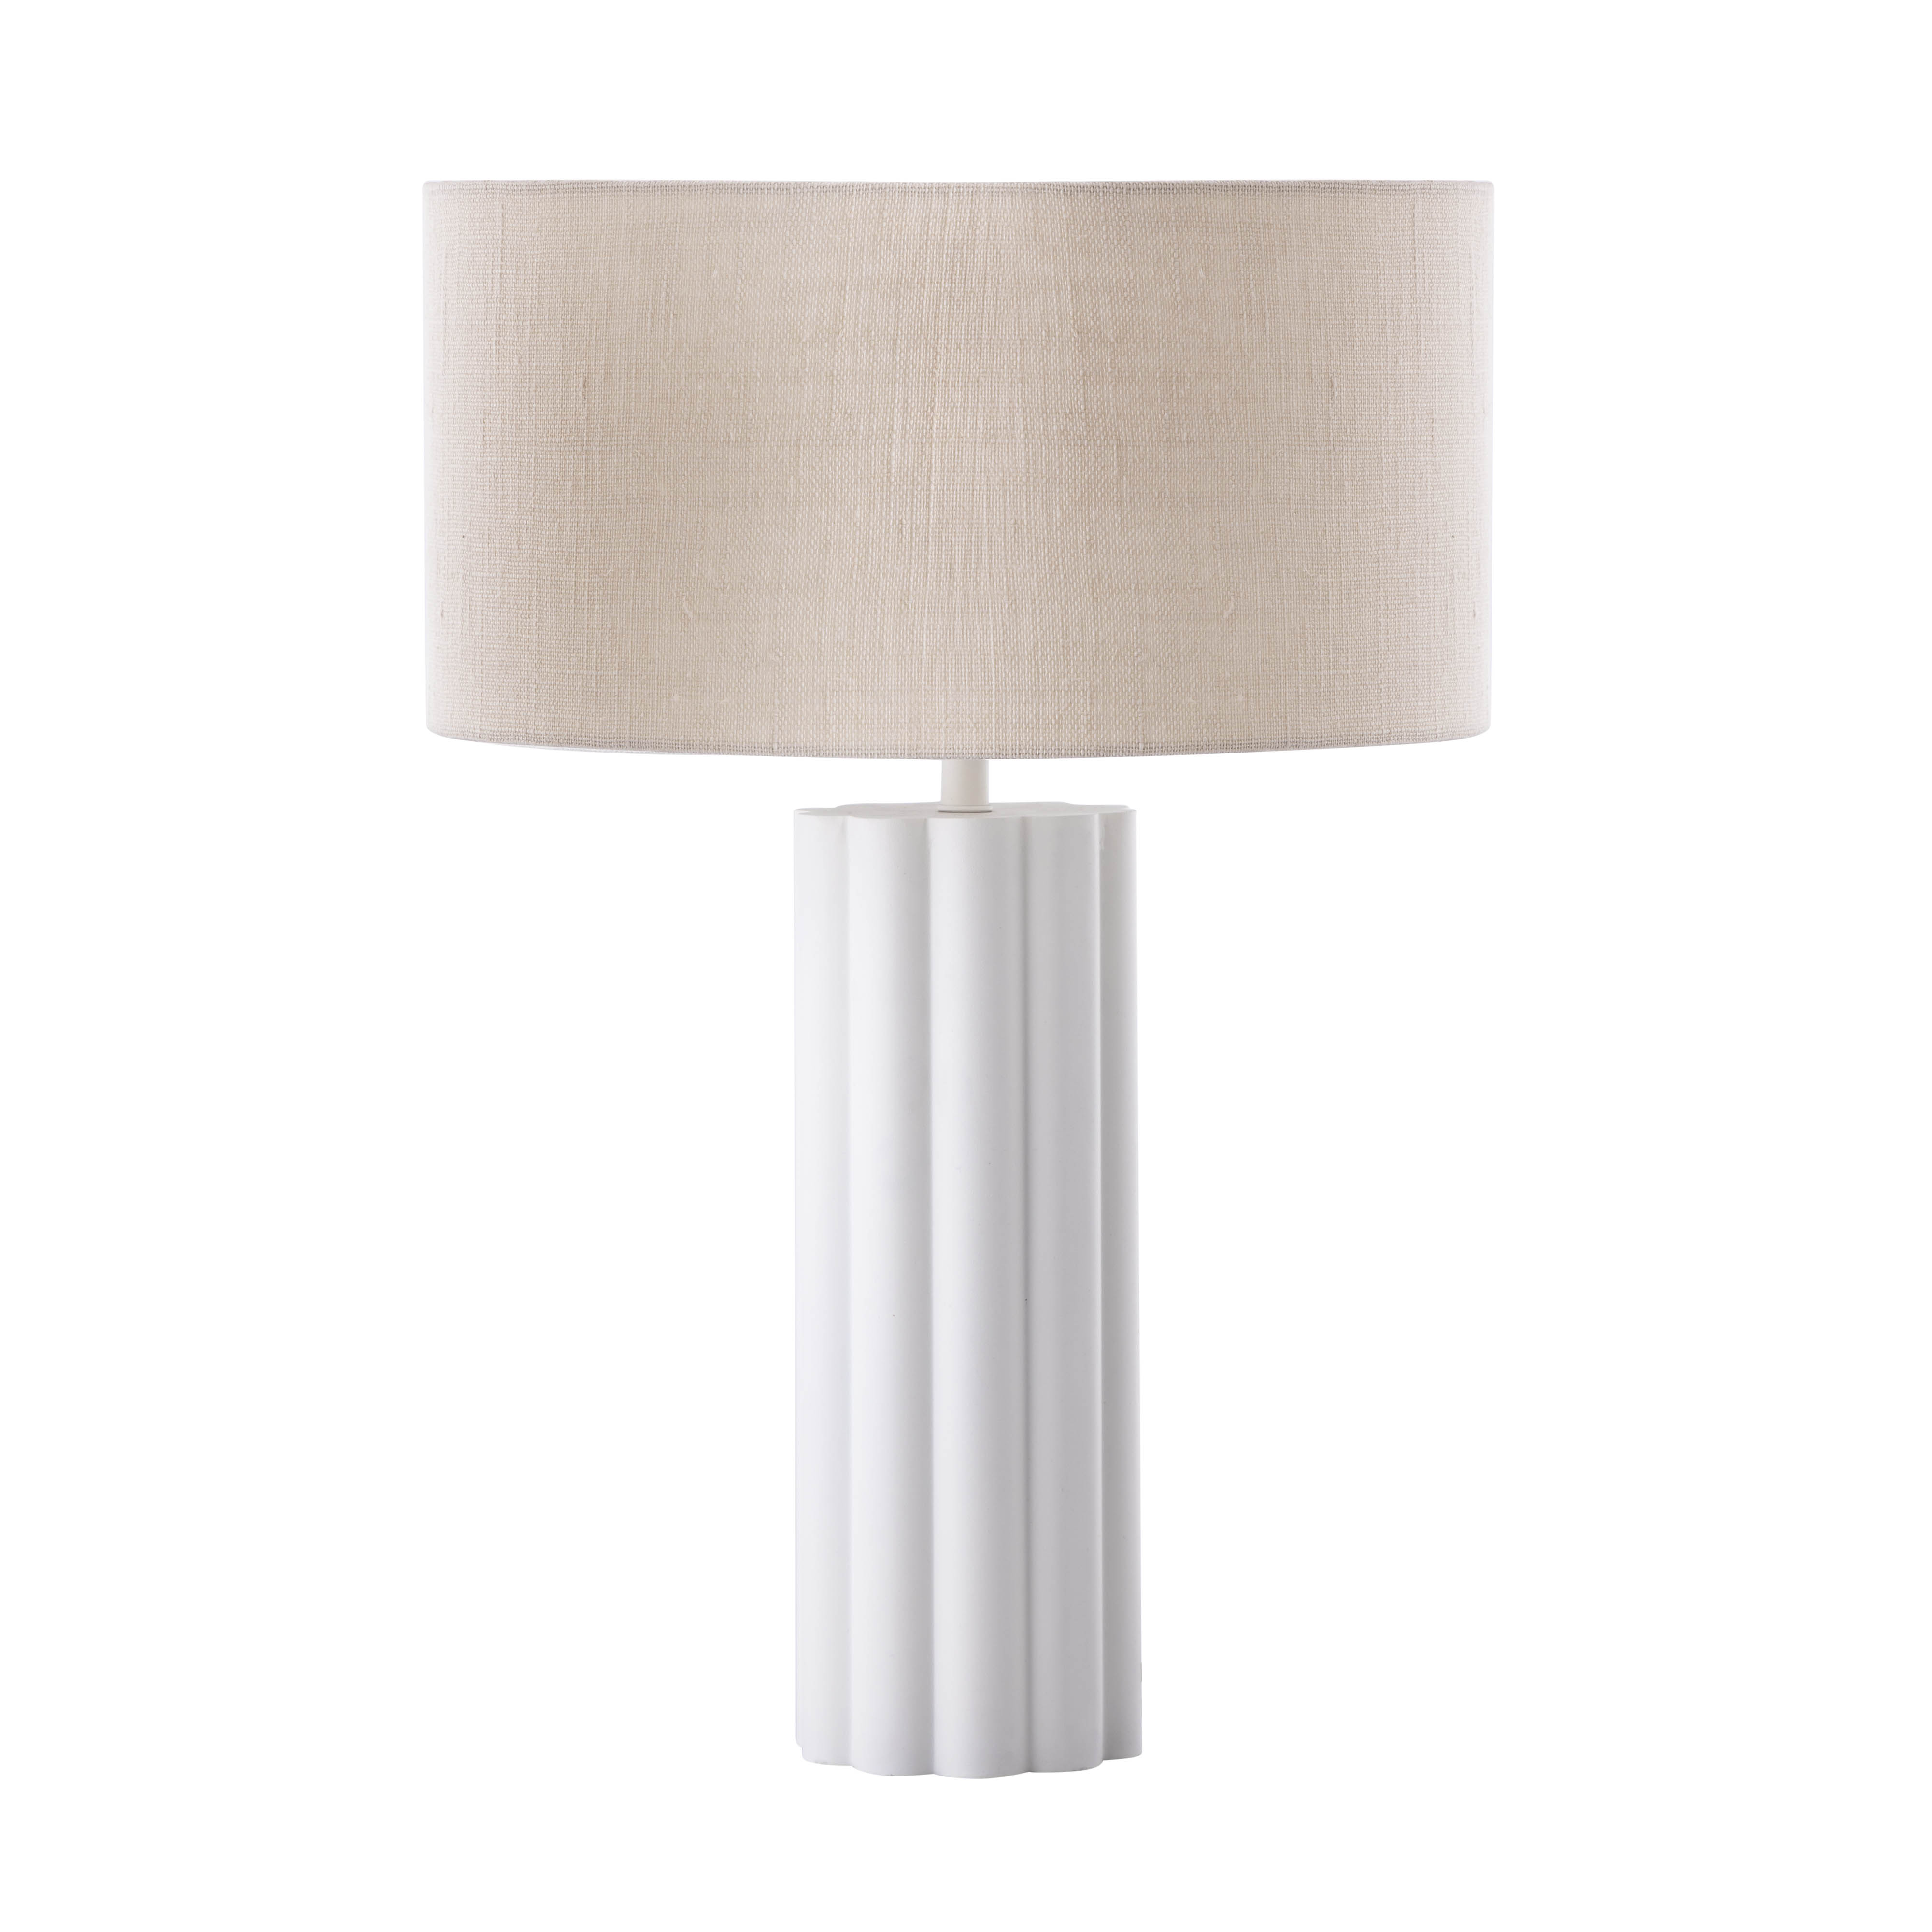 Latur Cream Table Lamp - TOV-G18385